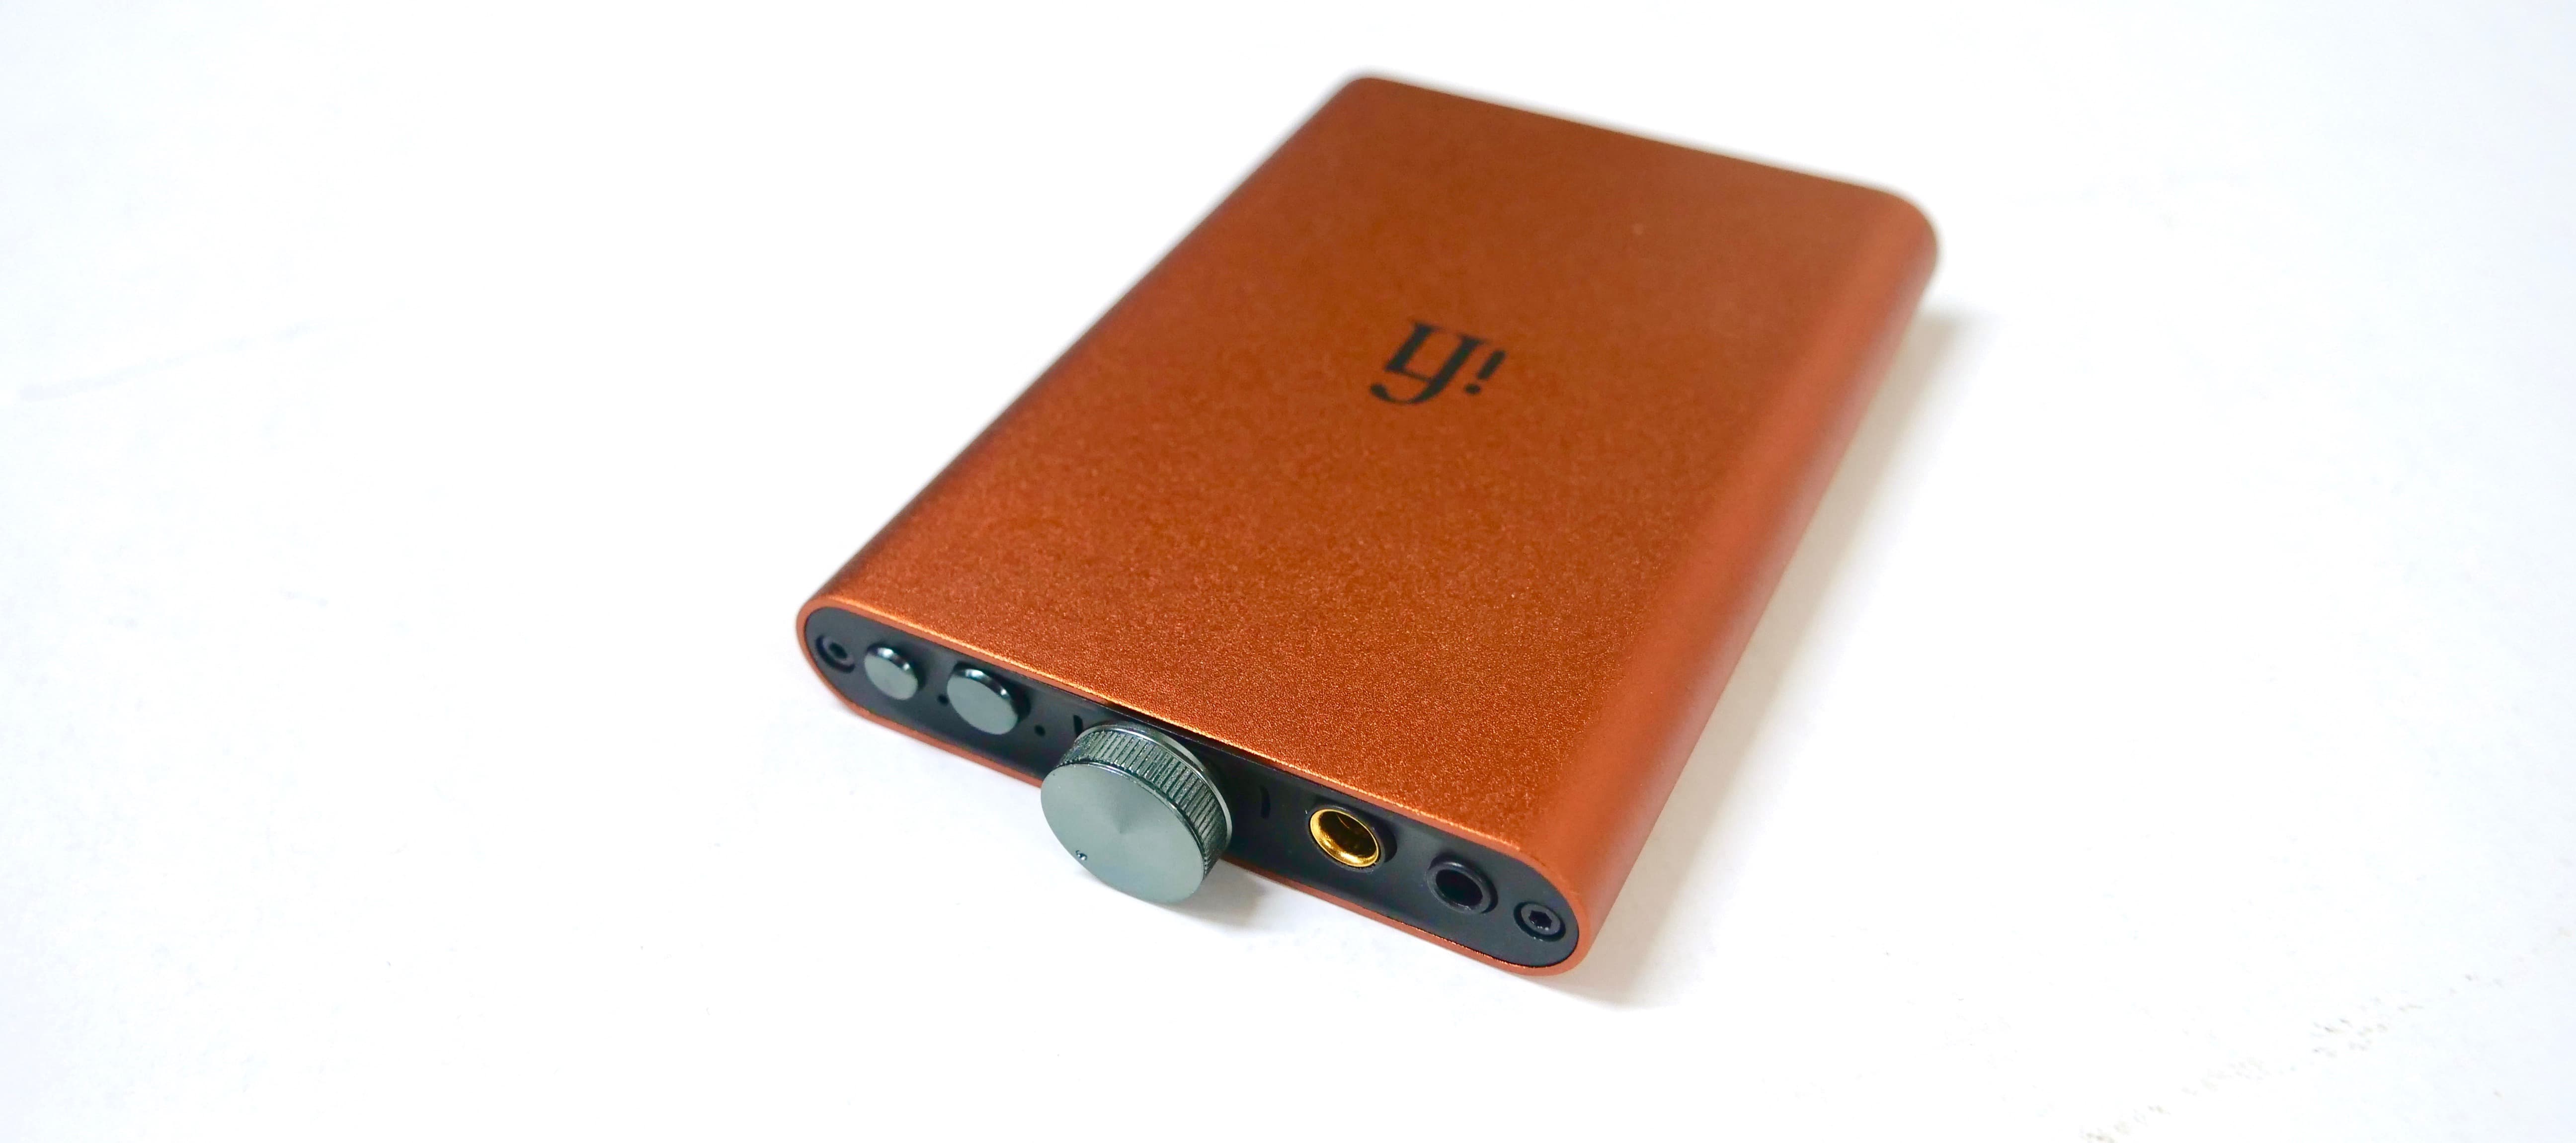 Reseña de iFi Hip-DAC V2 - DAC/Amplificador portátil de bolsillo